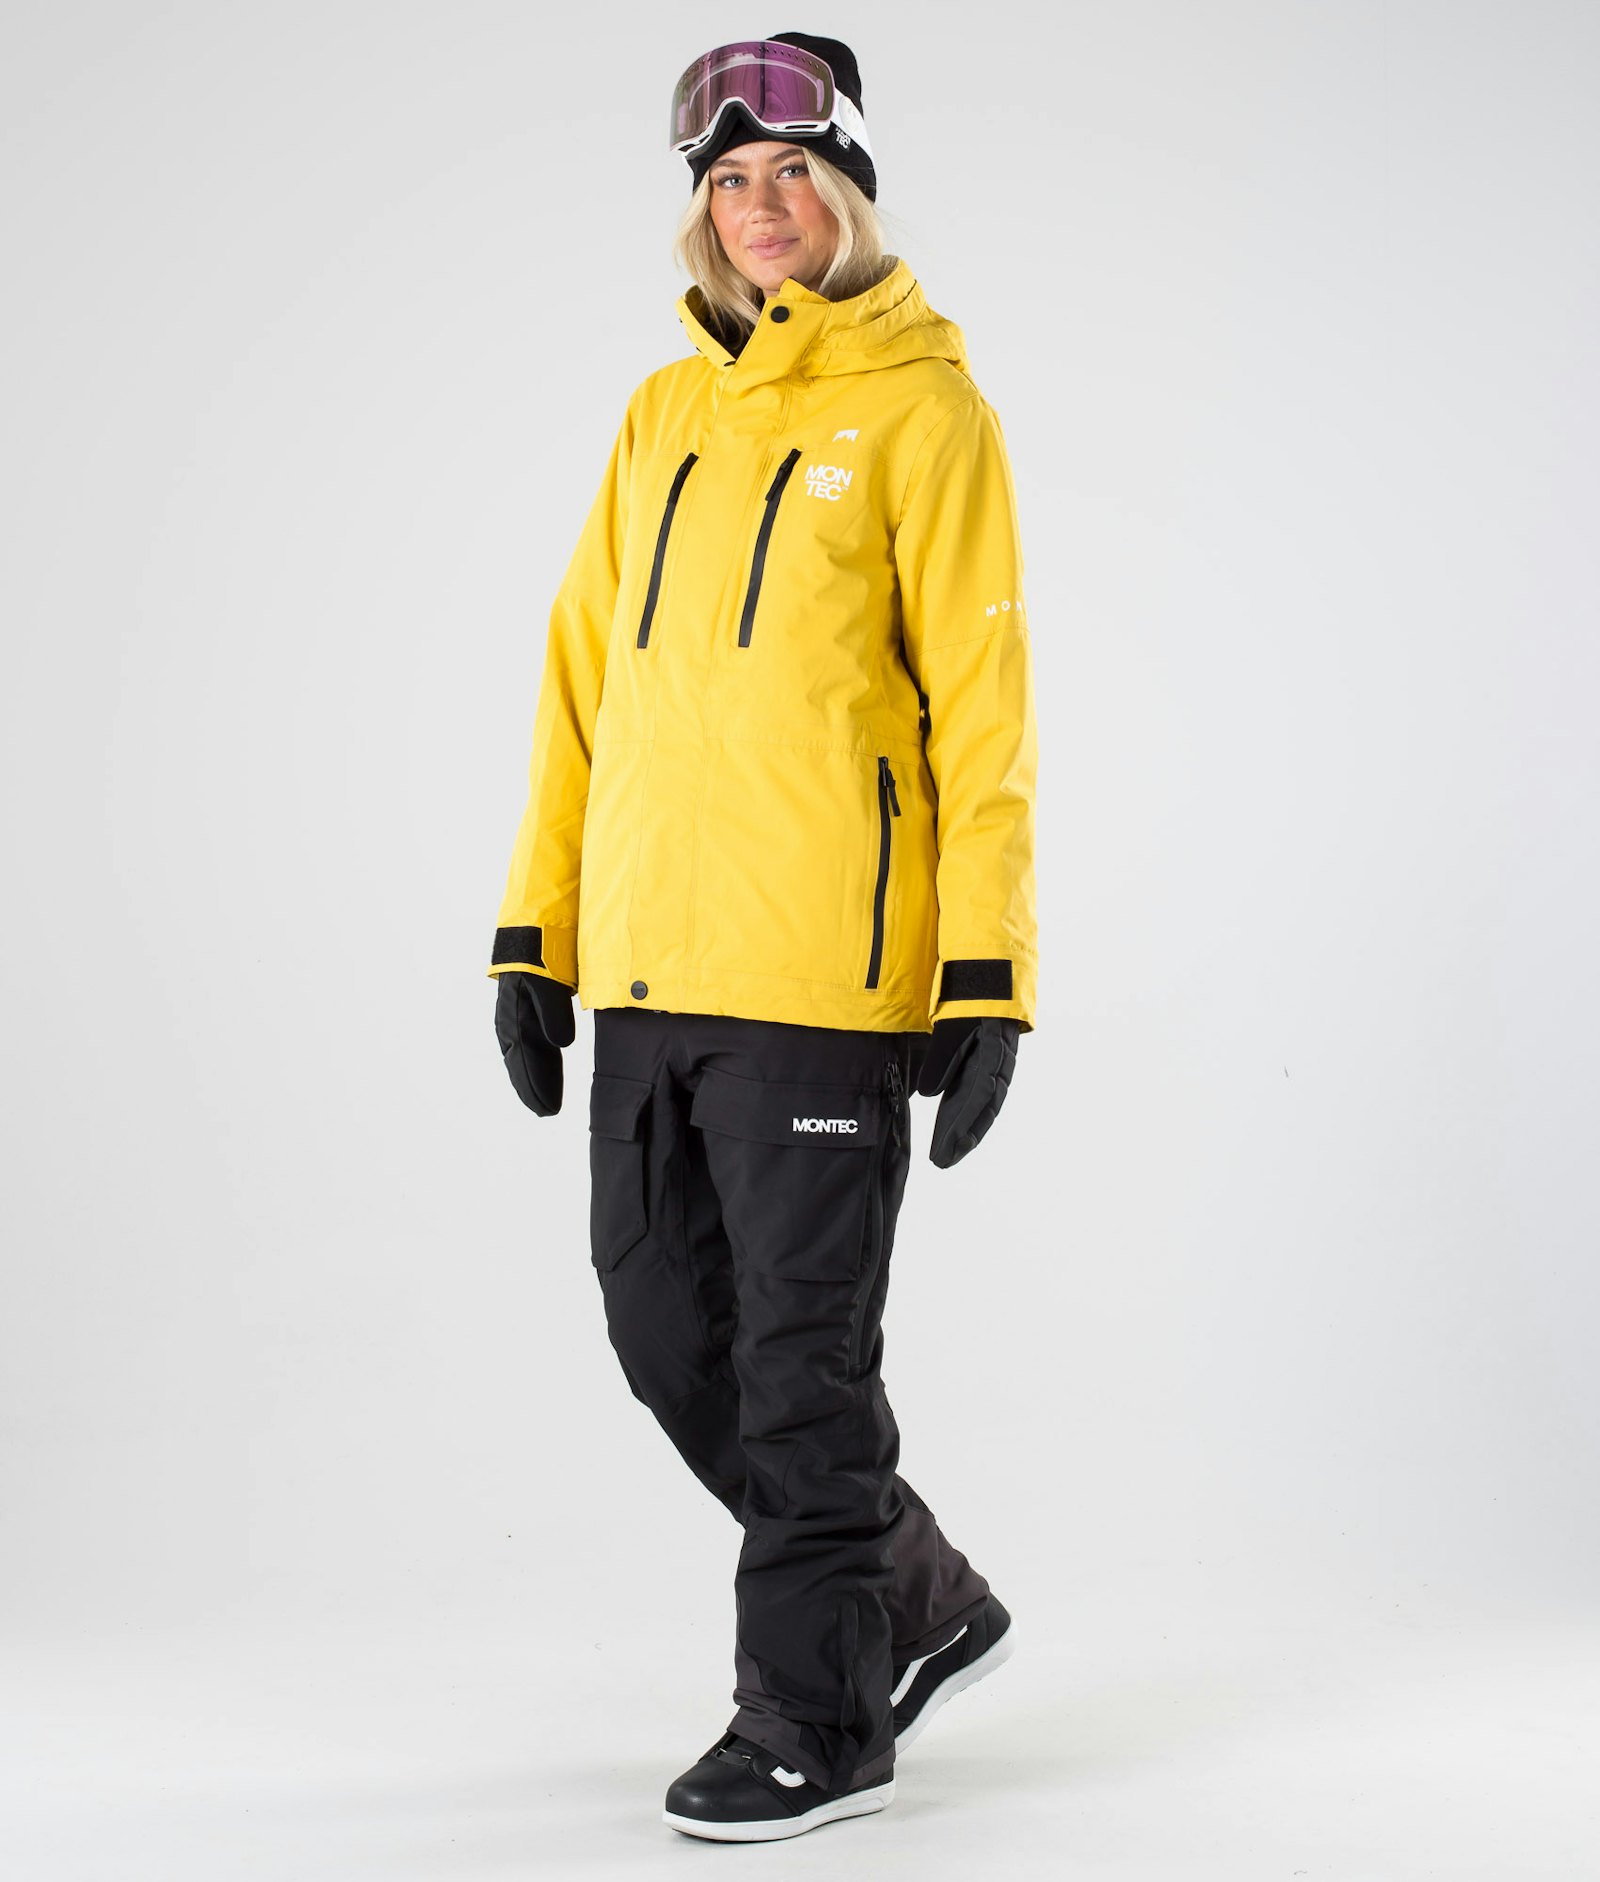 Fawk W 2019 Veste Snowboard Femme Yellow